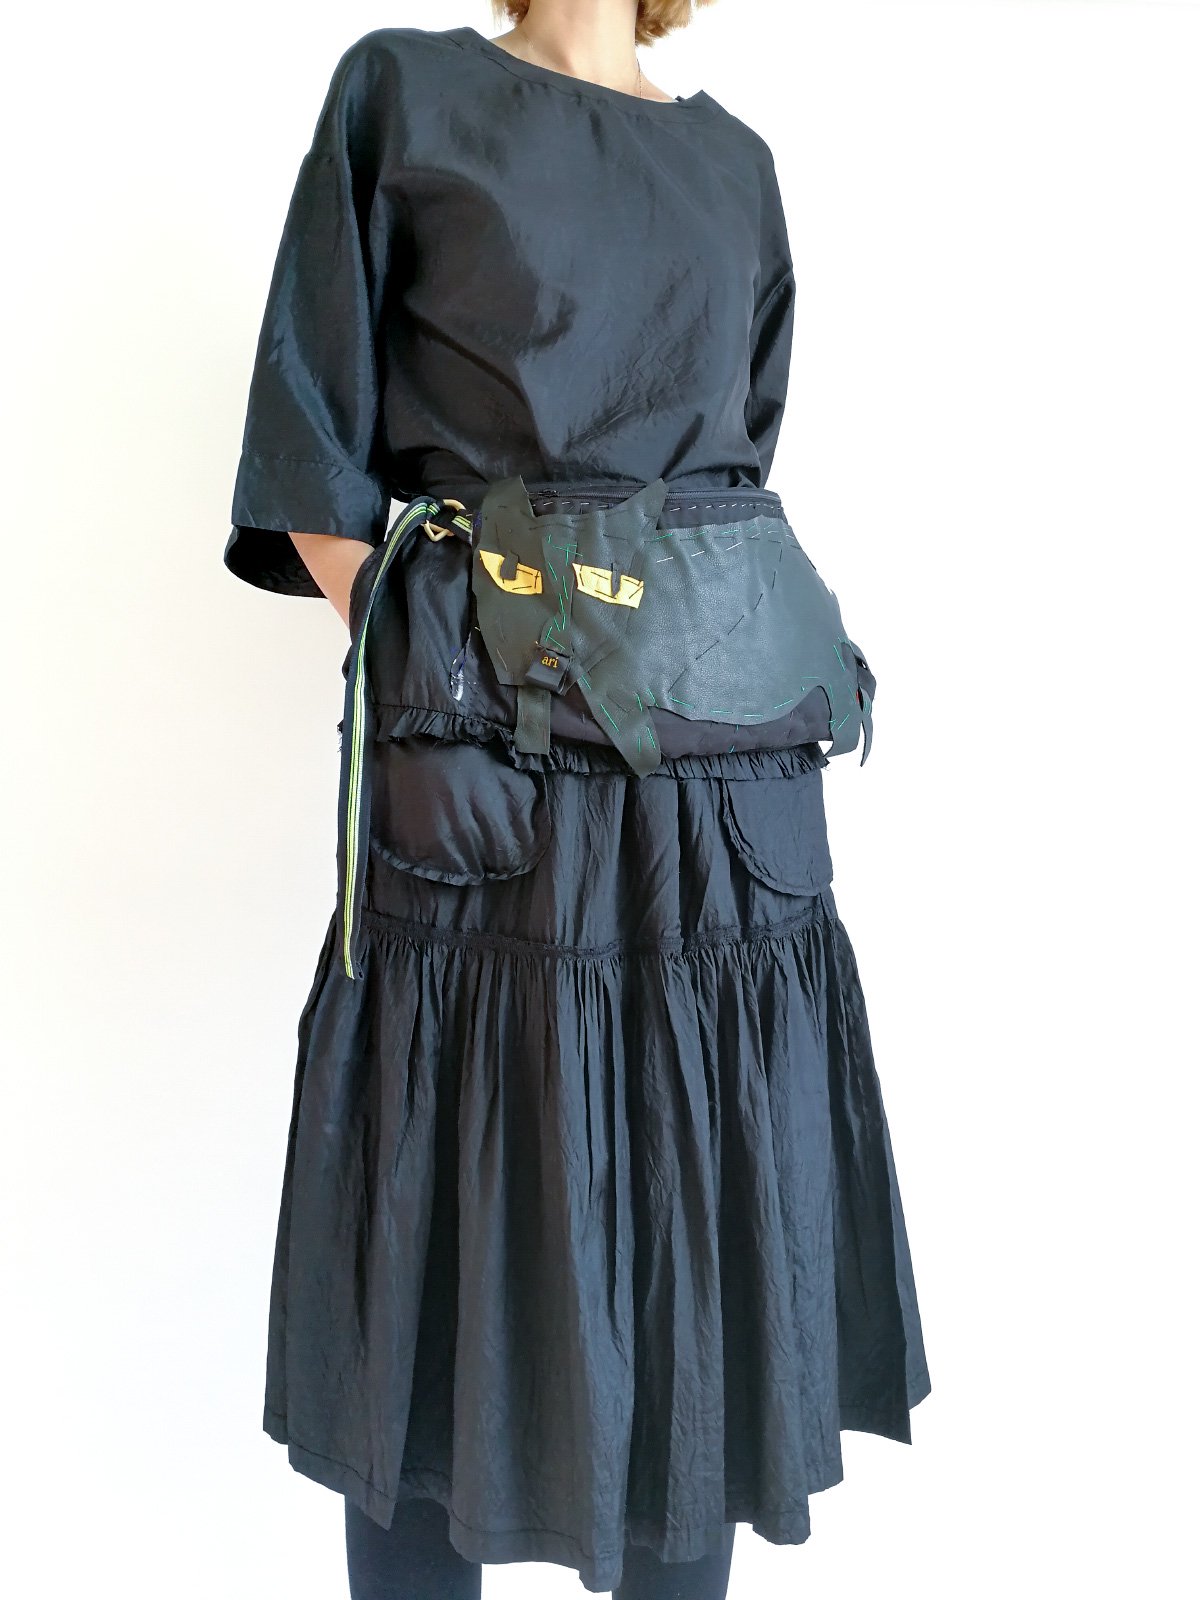 ari×mamarobot / Black Skirt with Cat Bag